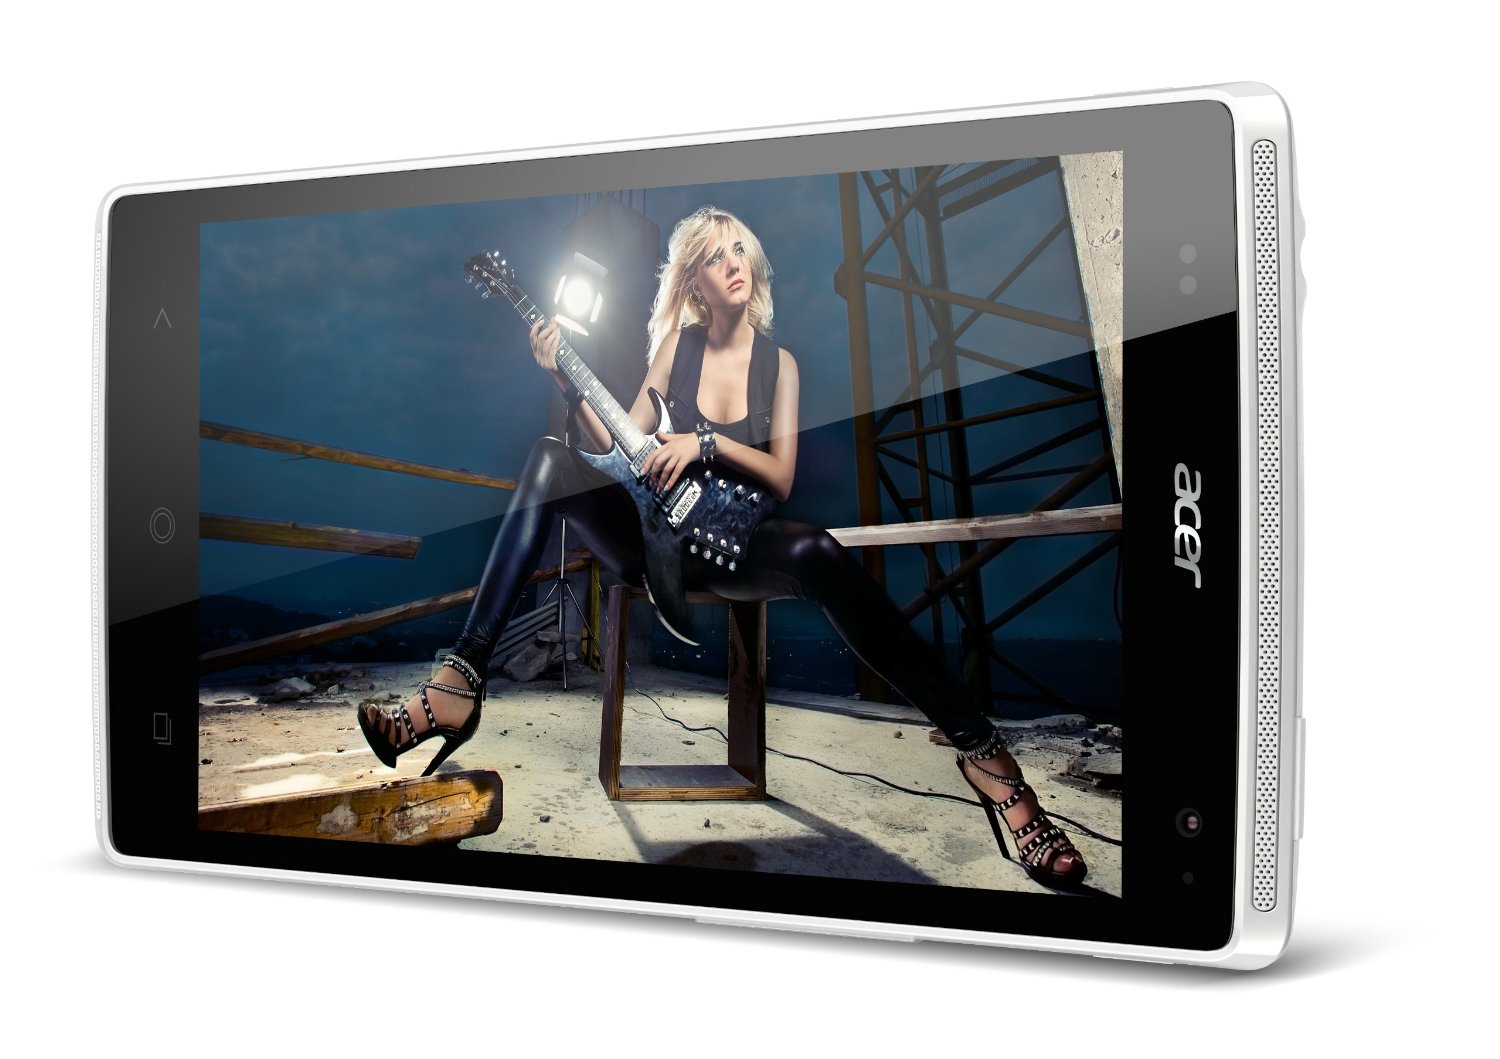 Acer Liquid Z5 Review: grote budgetsmartphone met matige specs